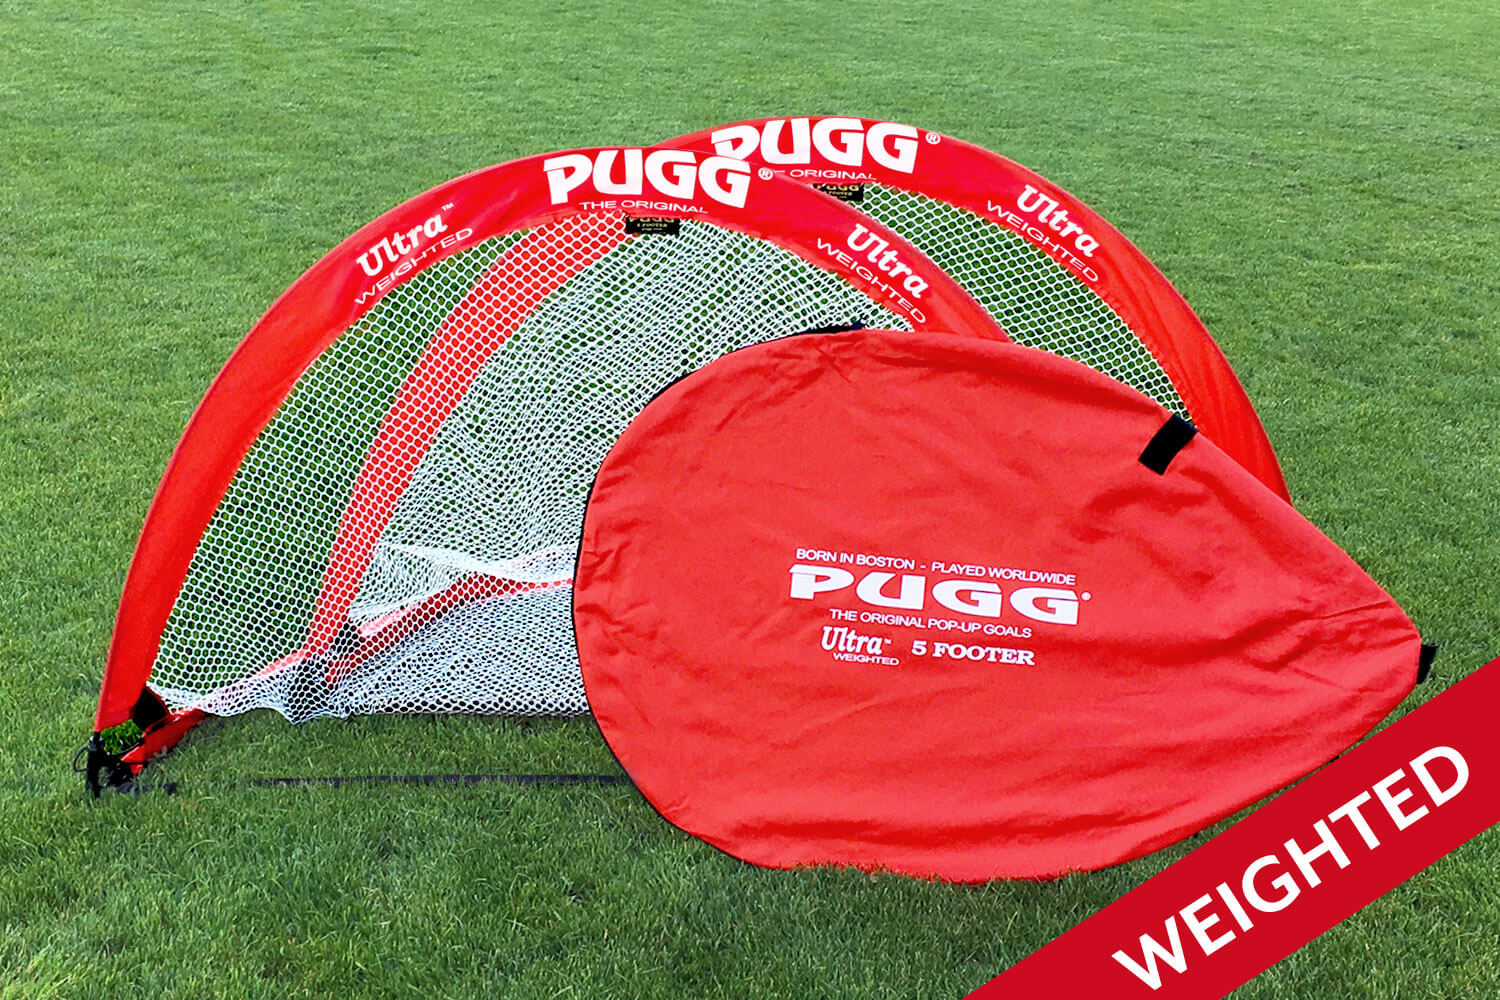 Ultra Q5 Weighted Pugg Pop Up Soccer Goal